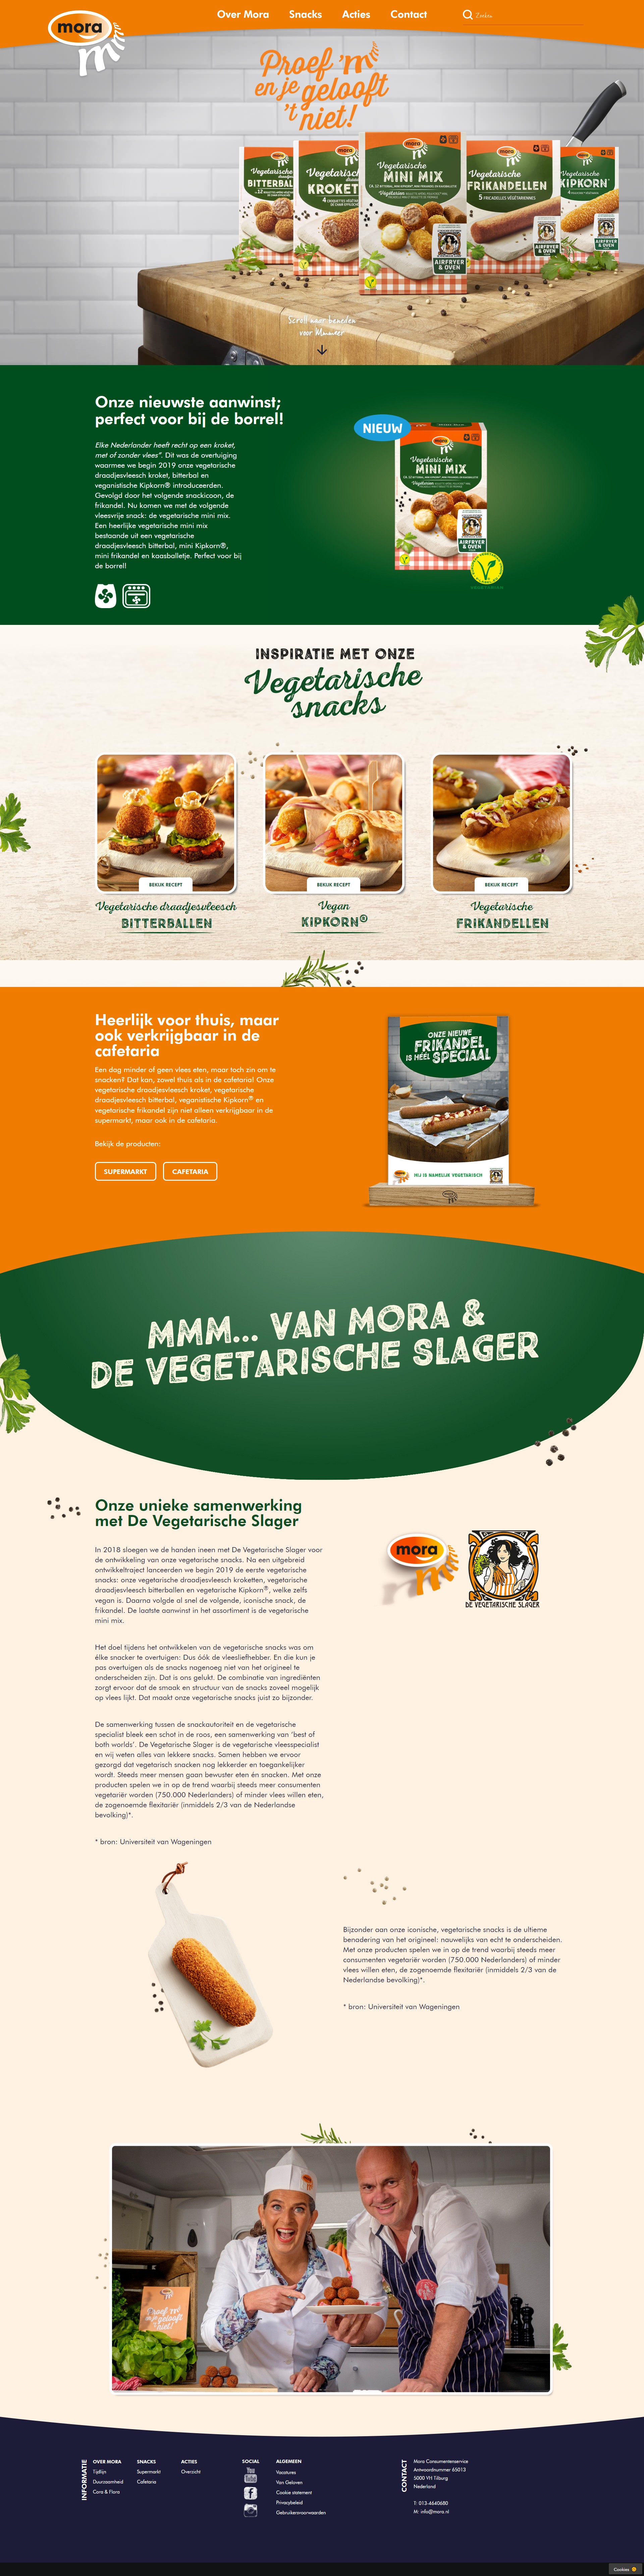 Homepage Mora website